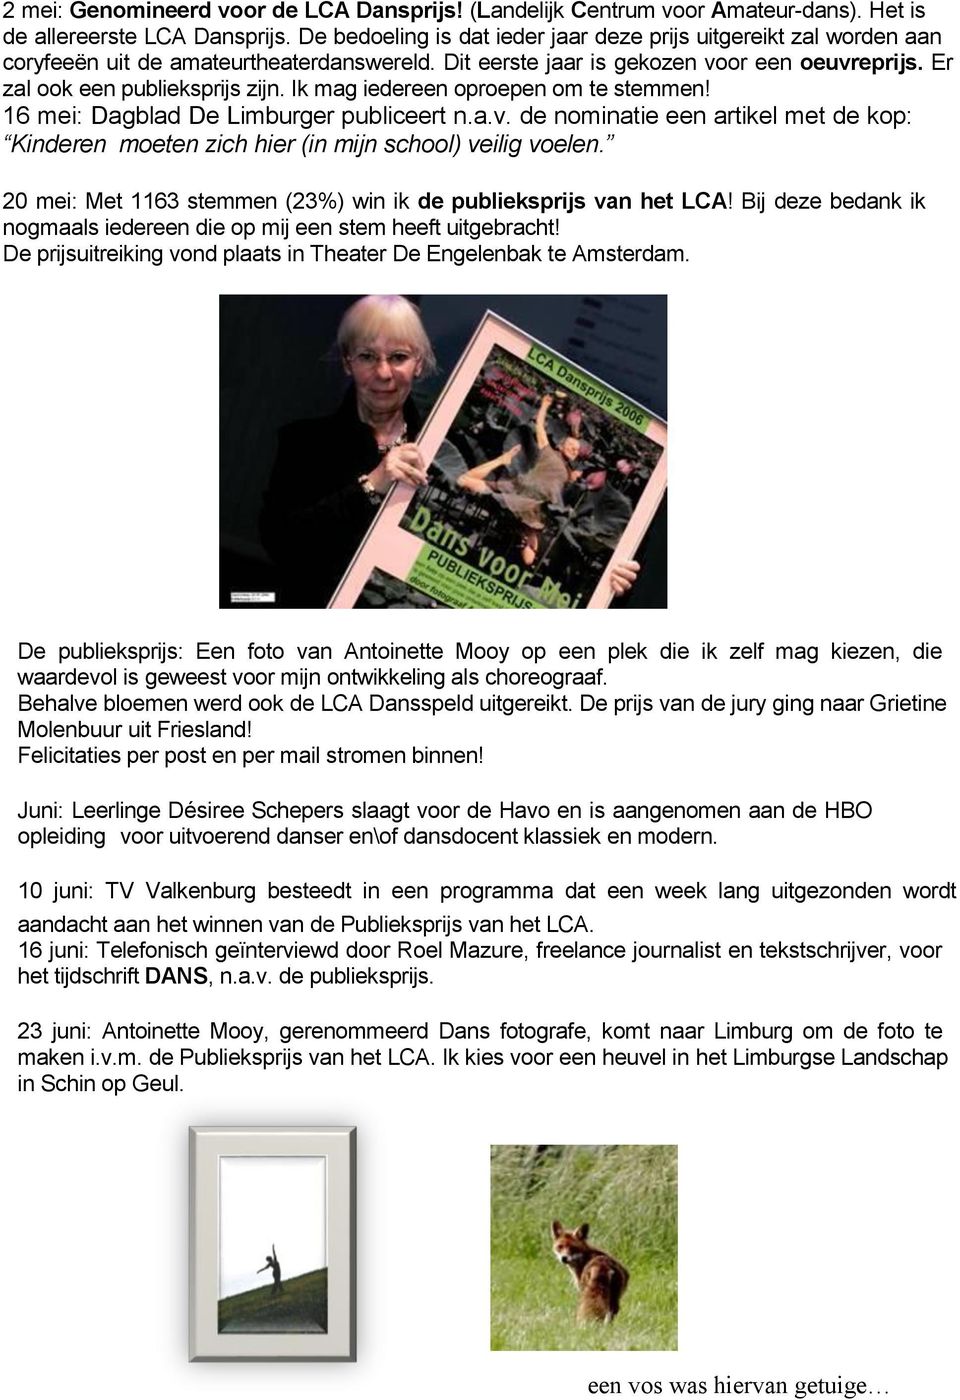 Ik mag iedereen oproepen om te stemmen! 16 mei: Dagblad De Limburger publiceert n.a.v. de nominatie een artikel met de kop: Kinderen moeten zich hier (in mijn school) veilig voelen.